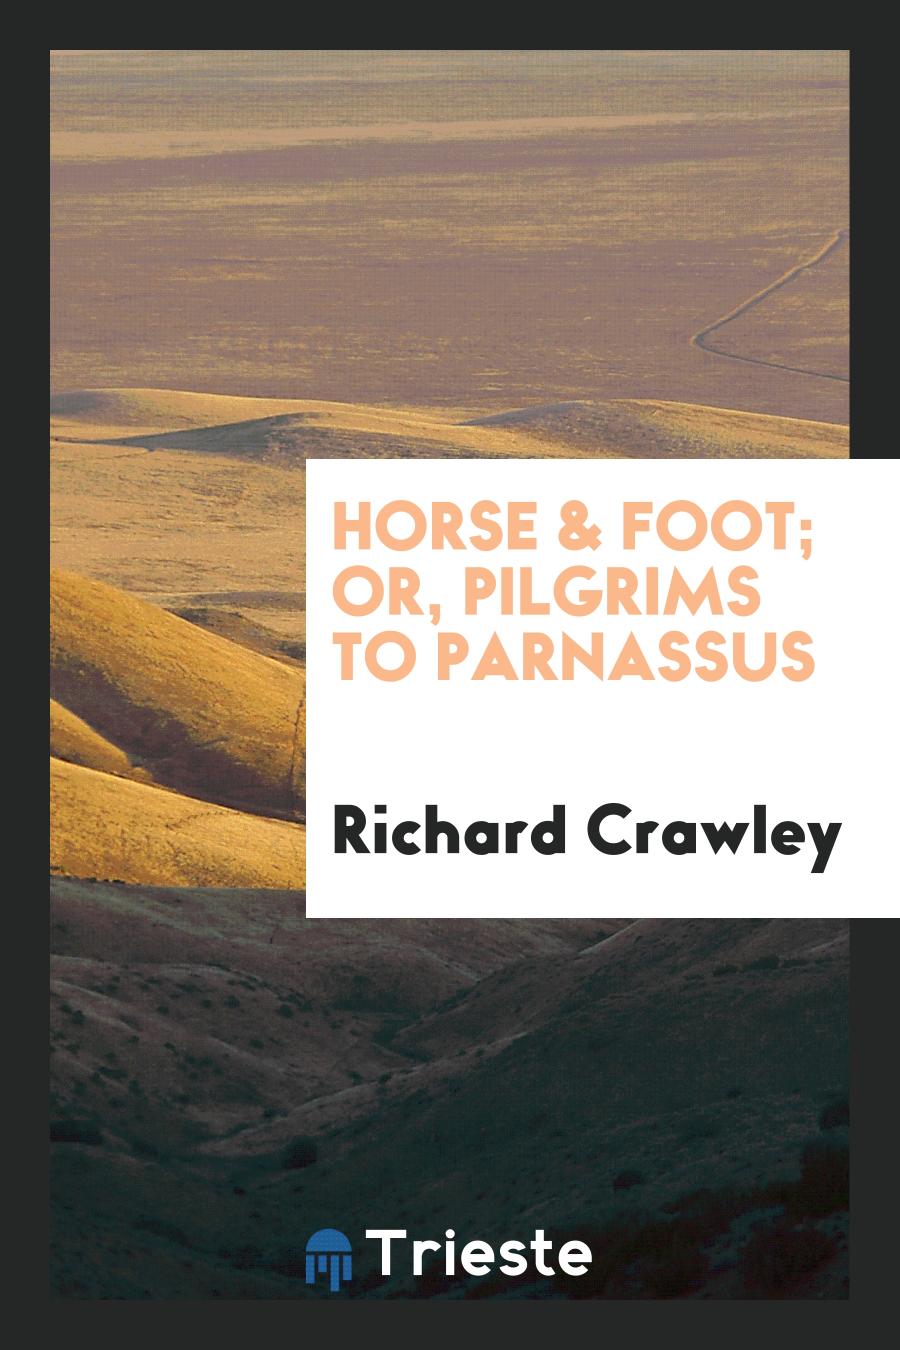 Horse & Foot; or, Pilgrims to Parnassus